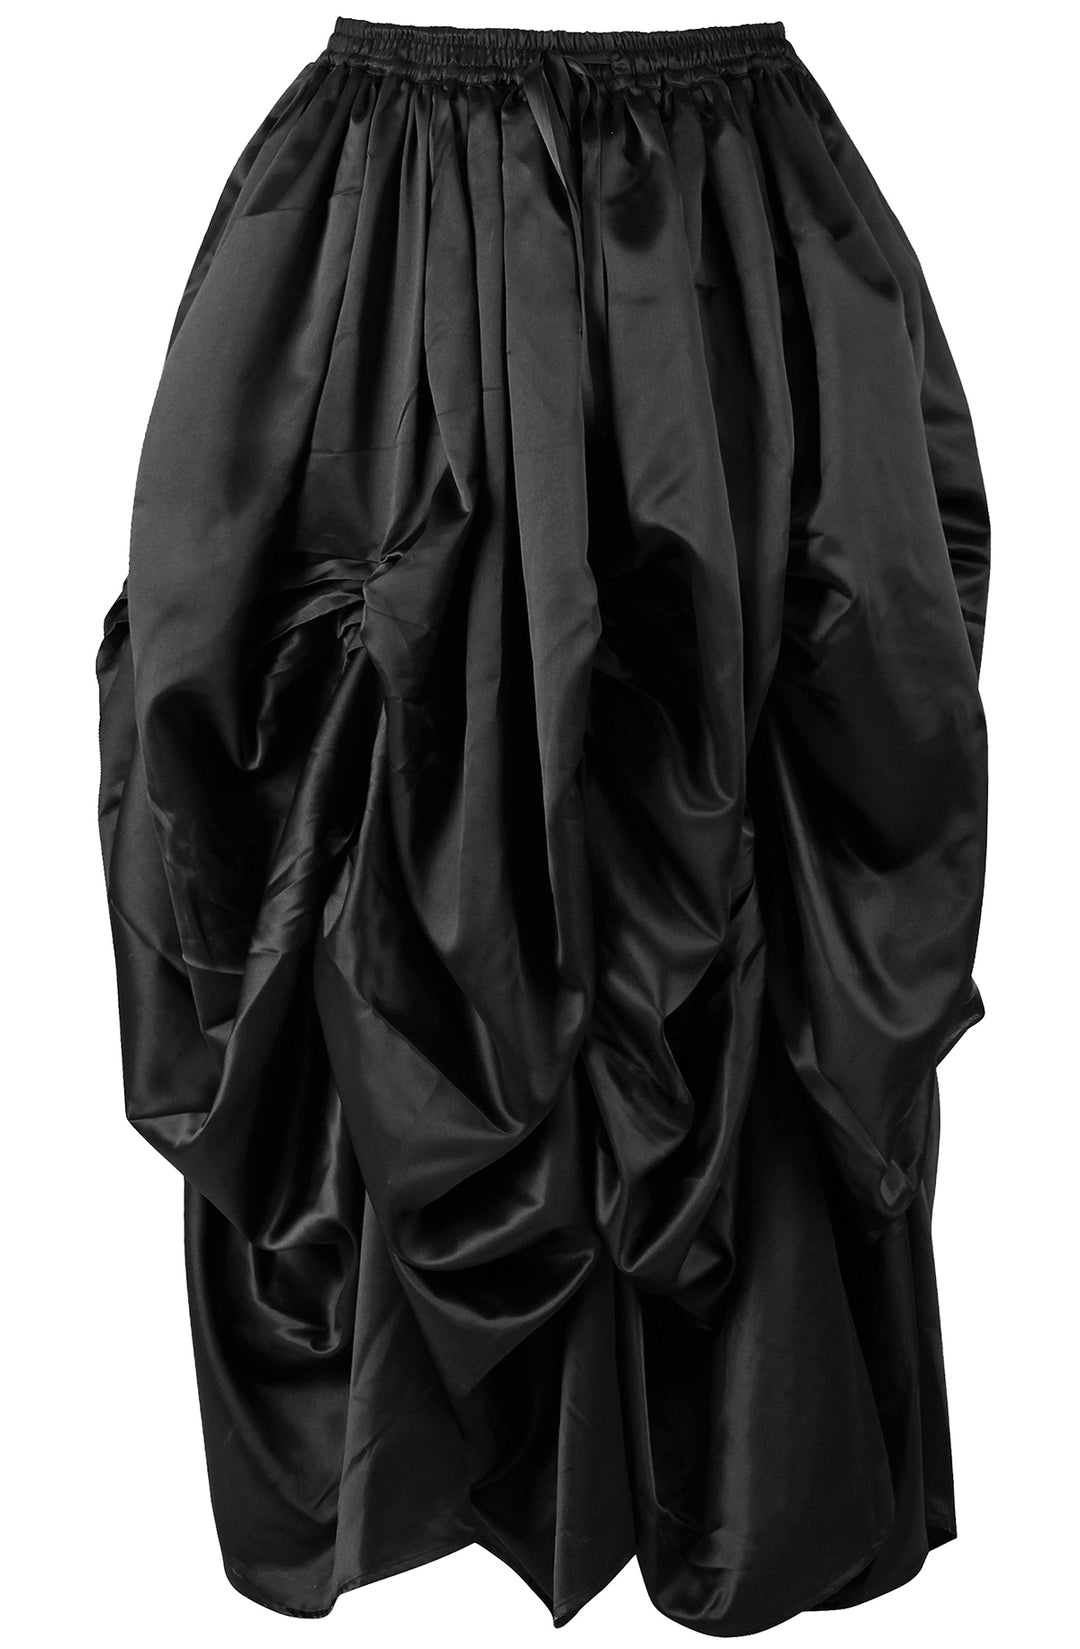 Slipper Satin Black Ball Gown Skirt